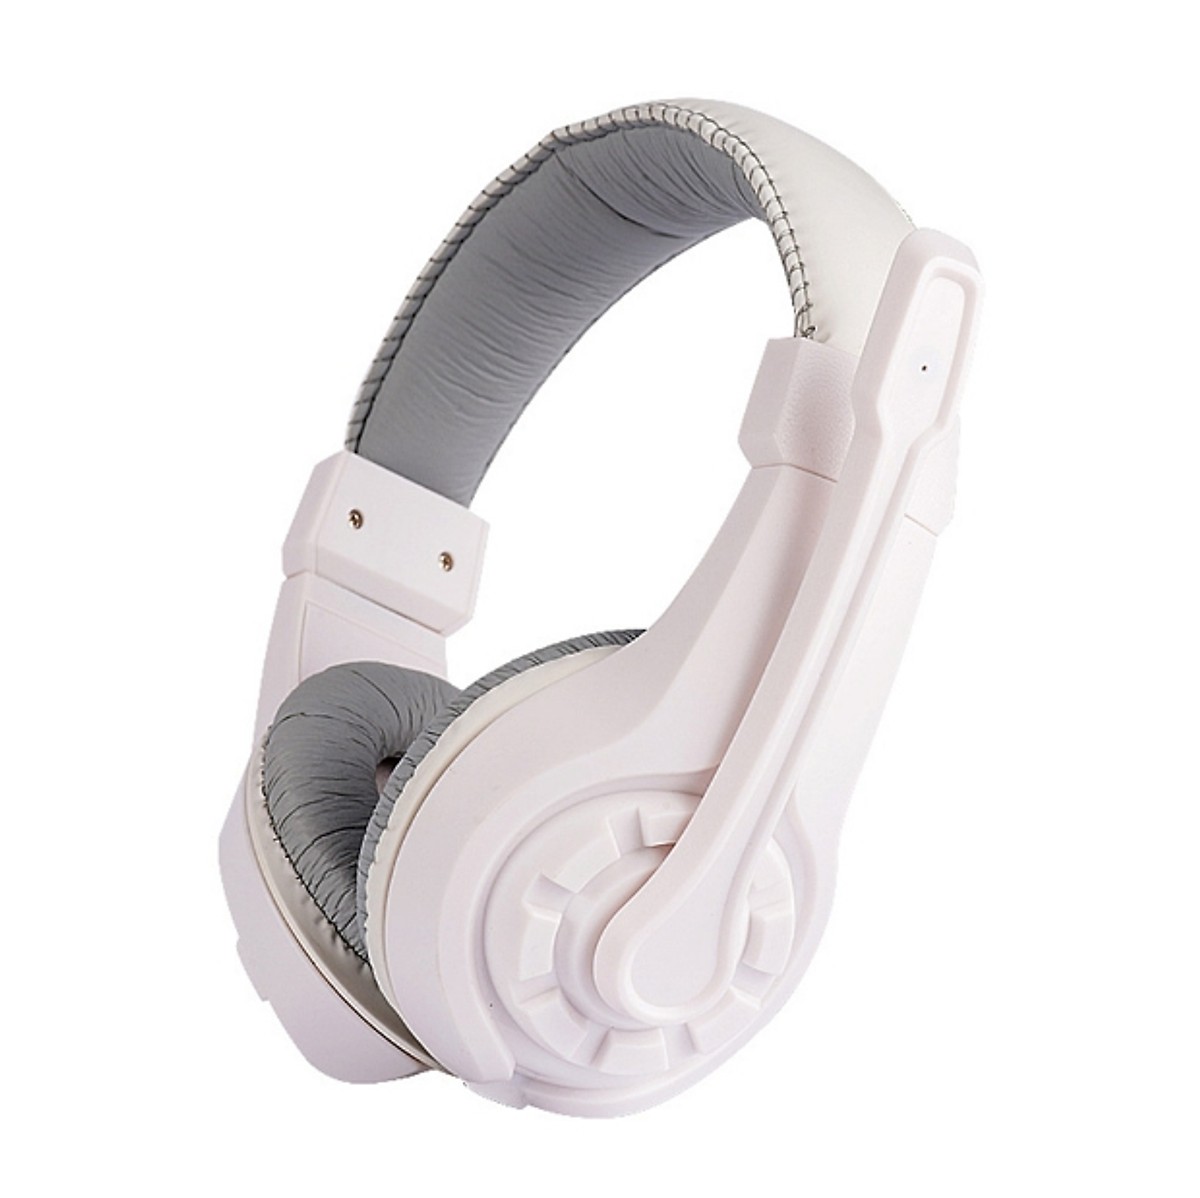 Tai nghe chụp tai G1 kèm mic đàm thoại dành cho Game thủ chống nhiễu, chống ồn tốt + tặng hộp quẹt bật lửa bay mặt ma cao cấp (màu ngẫu nhiên)